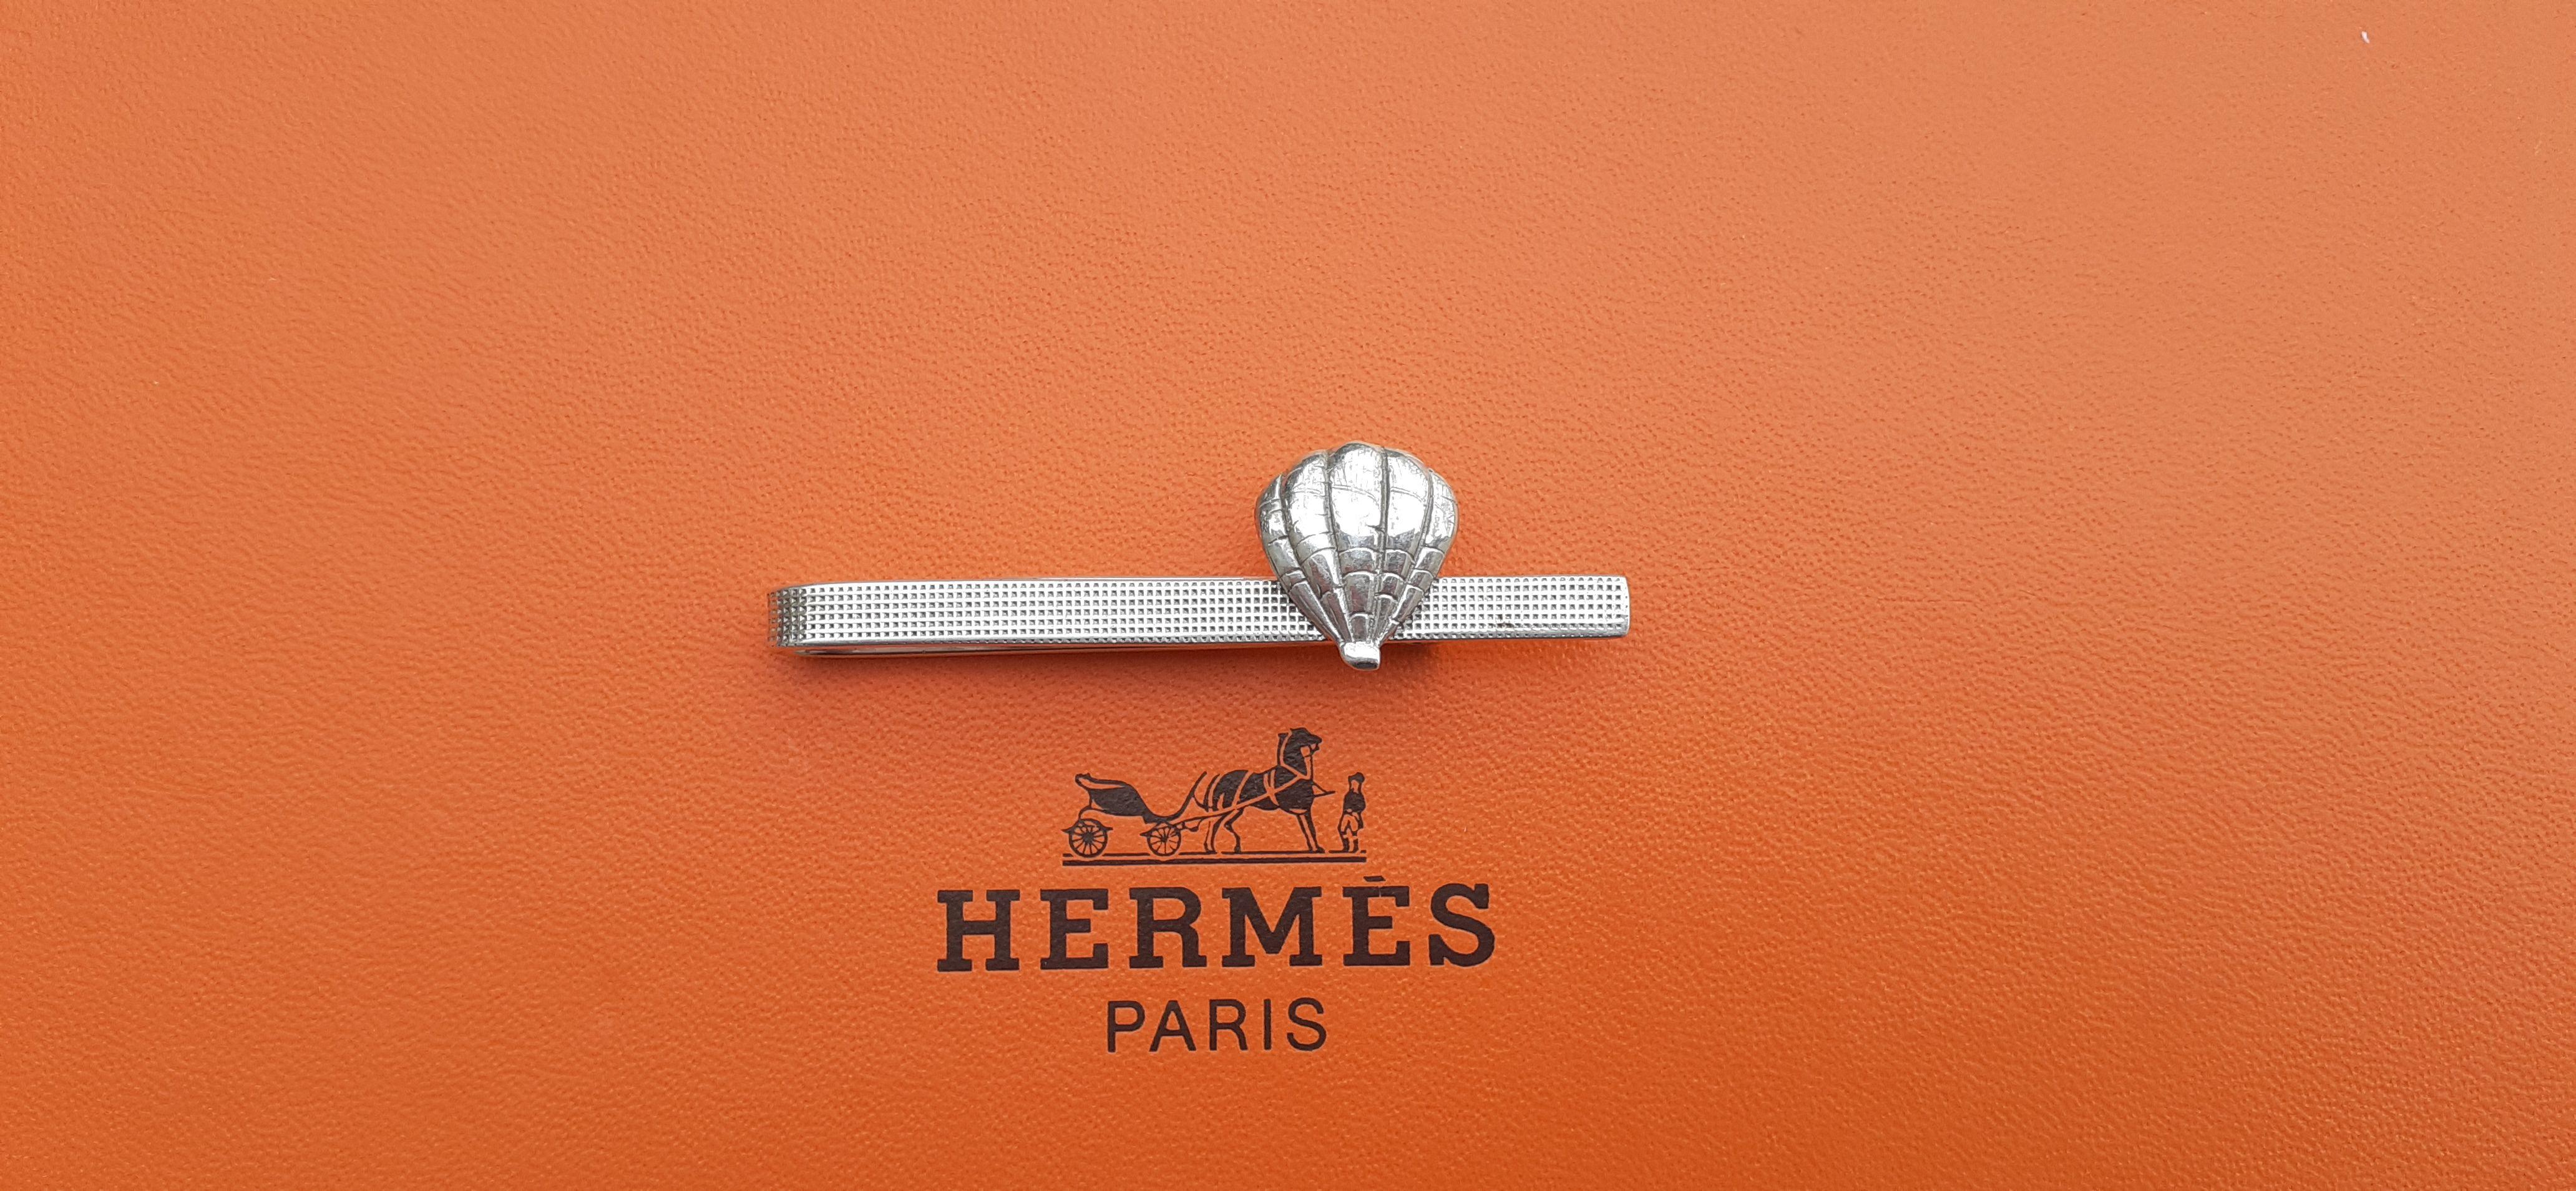 Wunderschöne und seltene authentische Hermès Krawattenklammer

In Form eines Heißluftballons oder einer Muschel

Vintage Artikel

Hergestellt aus Silber

